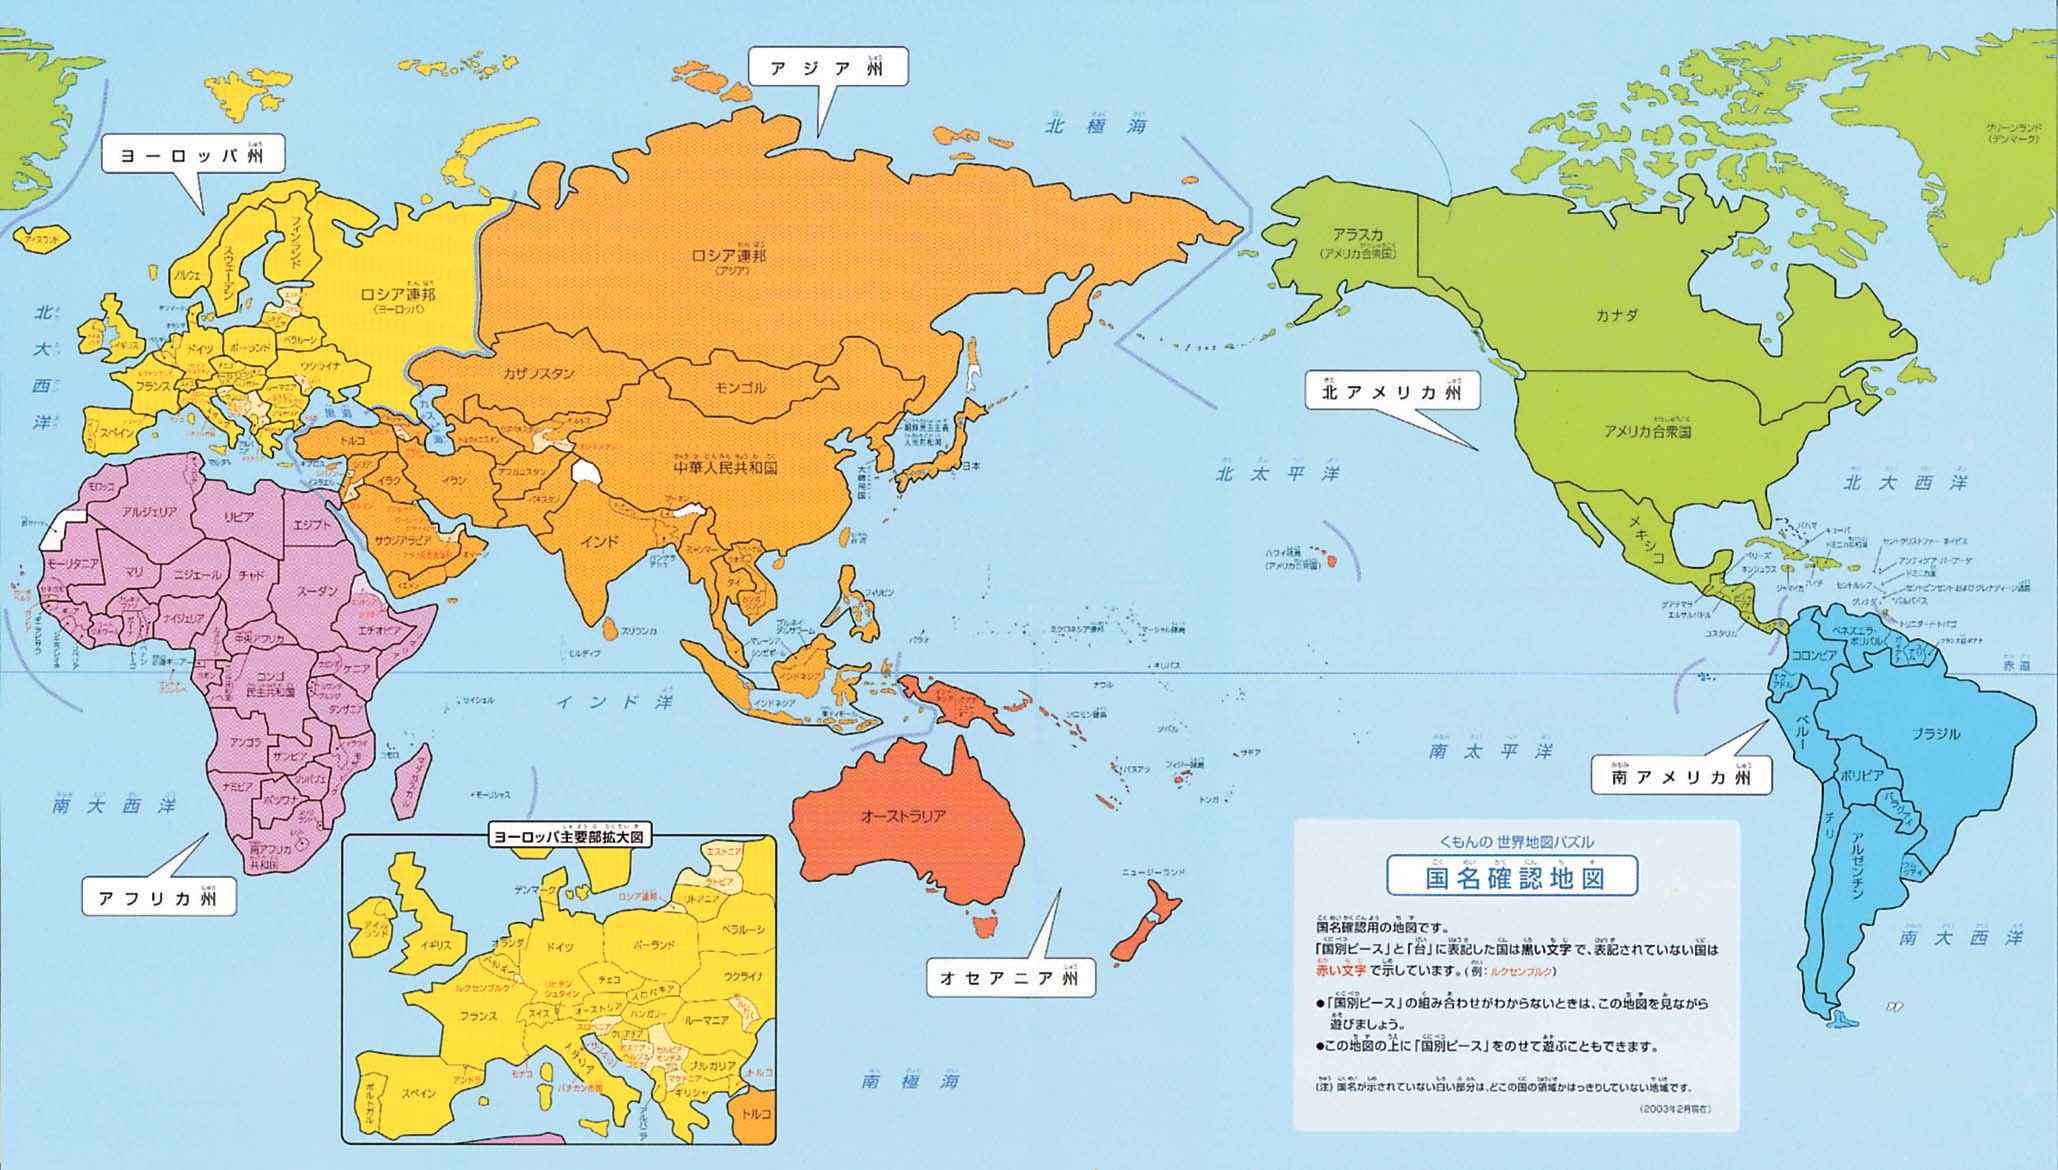 かわいいディズニー画像 上シンプル わかりやすい 世界 地図 イラスト